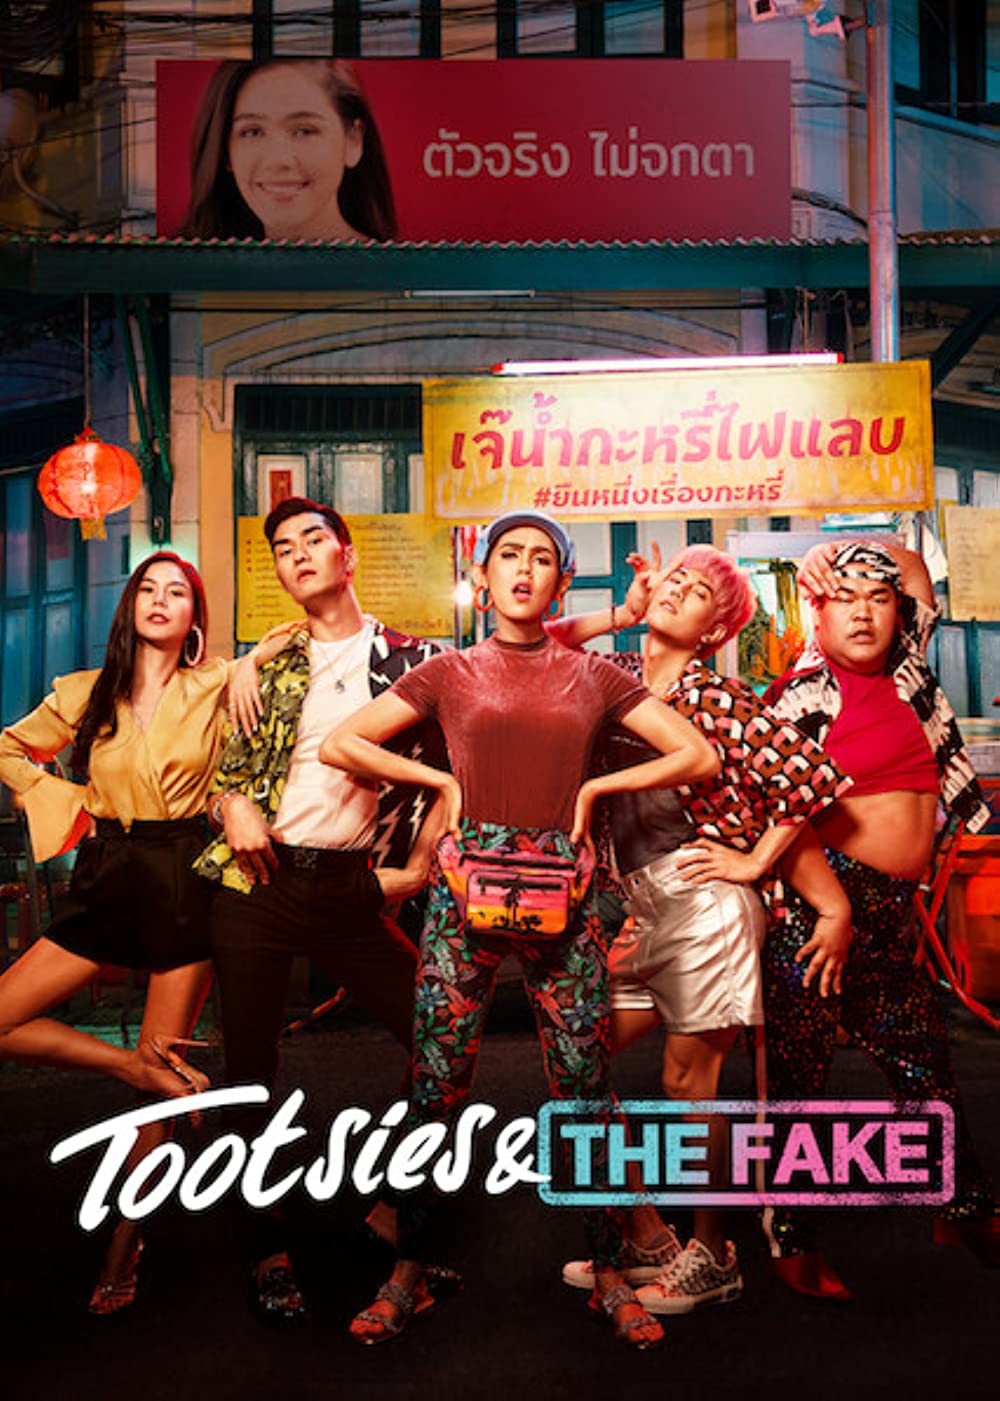 Phim đồng tính nữ Thái Lan mới nhất: Thế thân bá đạo - Tootsies and The Fake (2019)